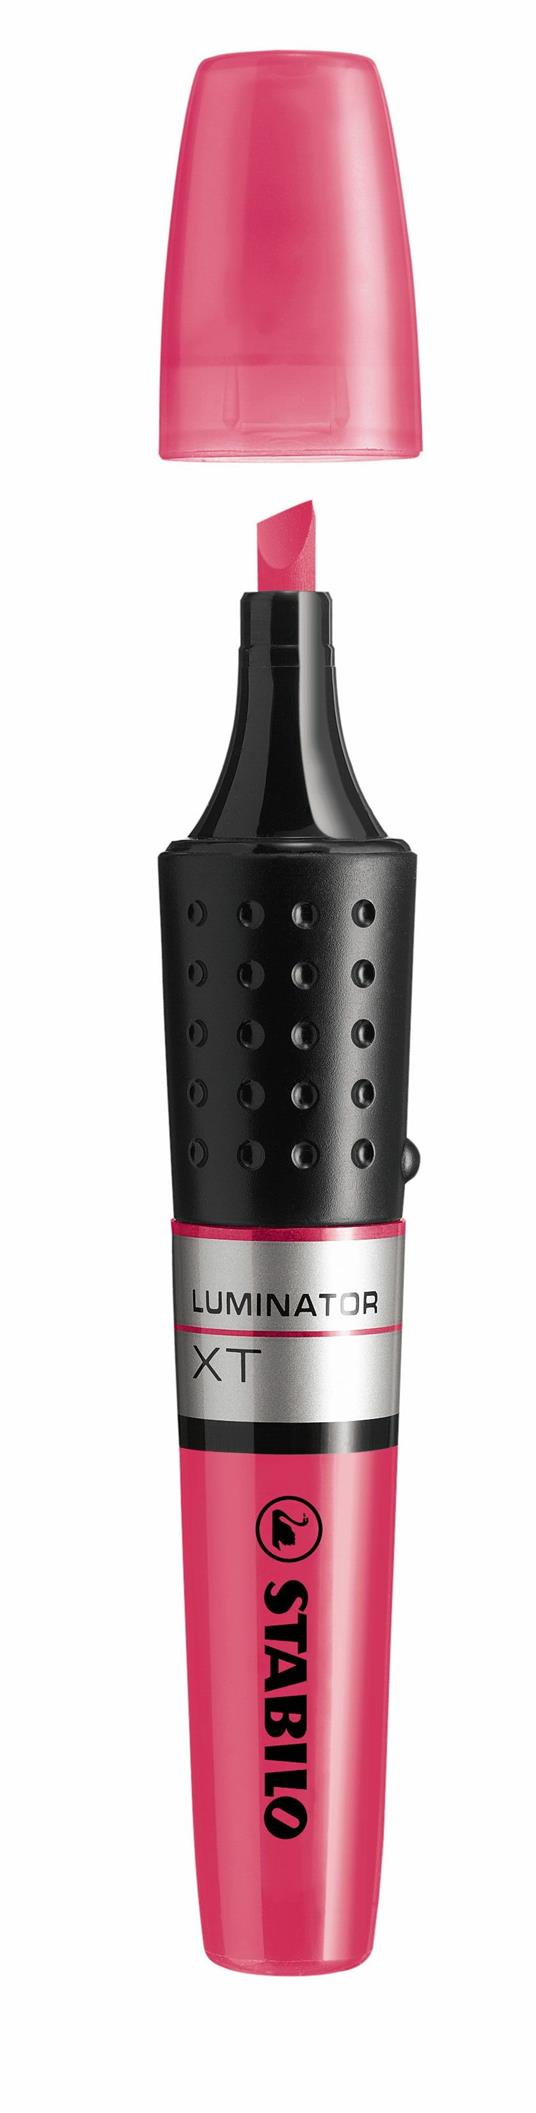 Evidenziatore - STABILO LUMINATOR - lunga durata e doppio tratto (2 + 5 mm) - Rosa